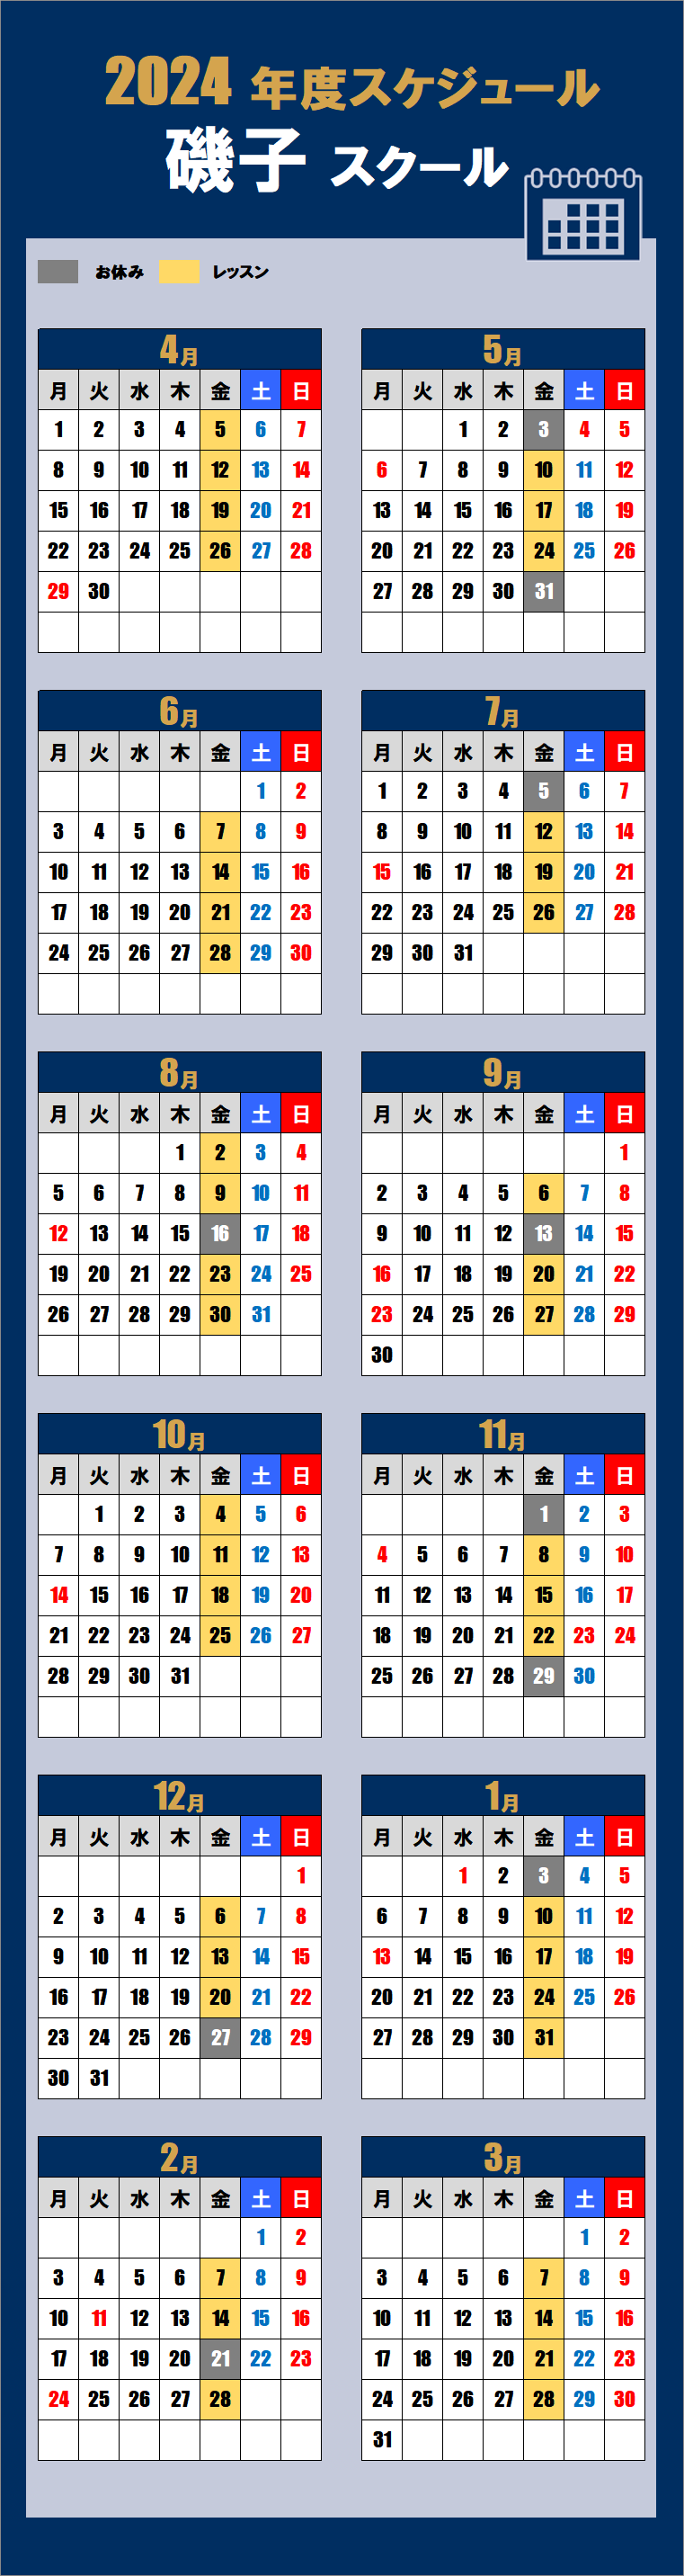 2024磯子スクールカレンダー